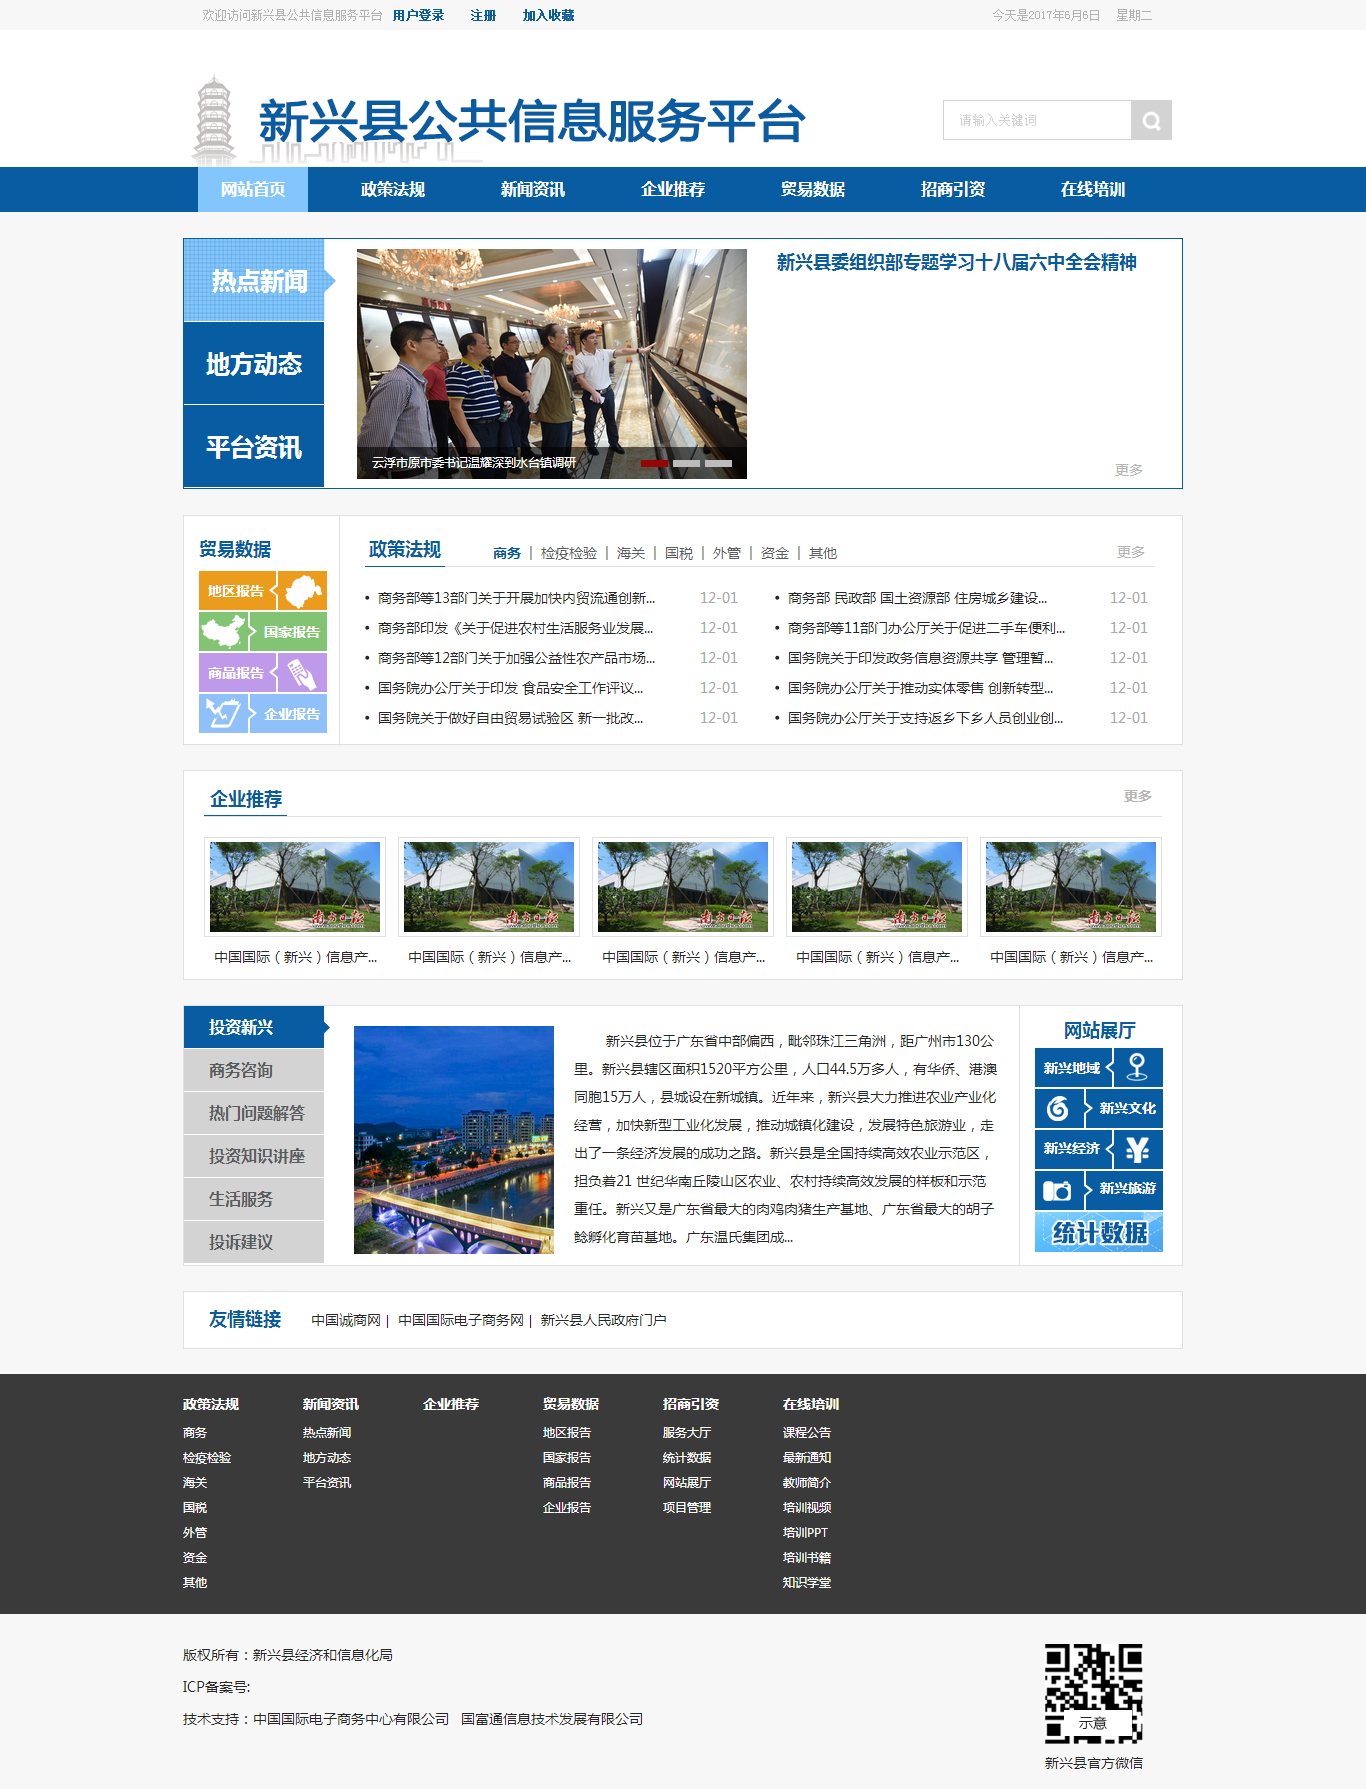 新兴县公共信息服务平台.png